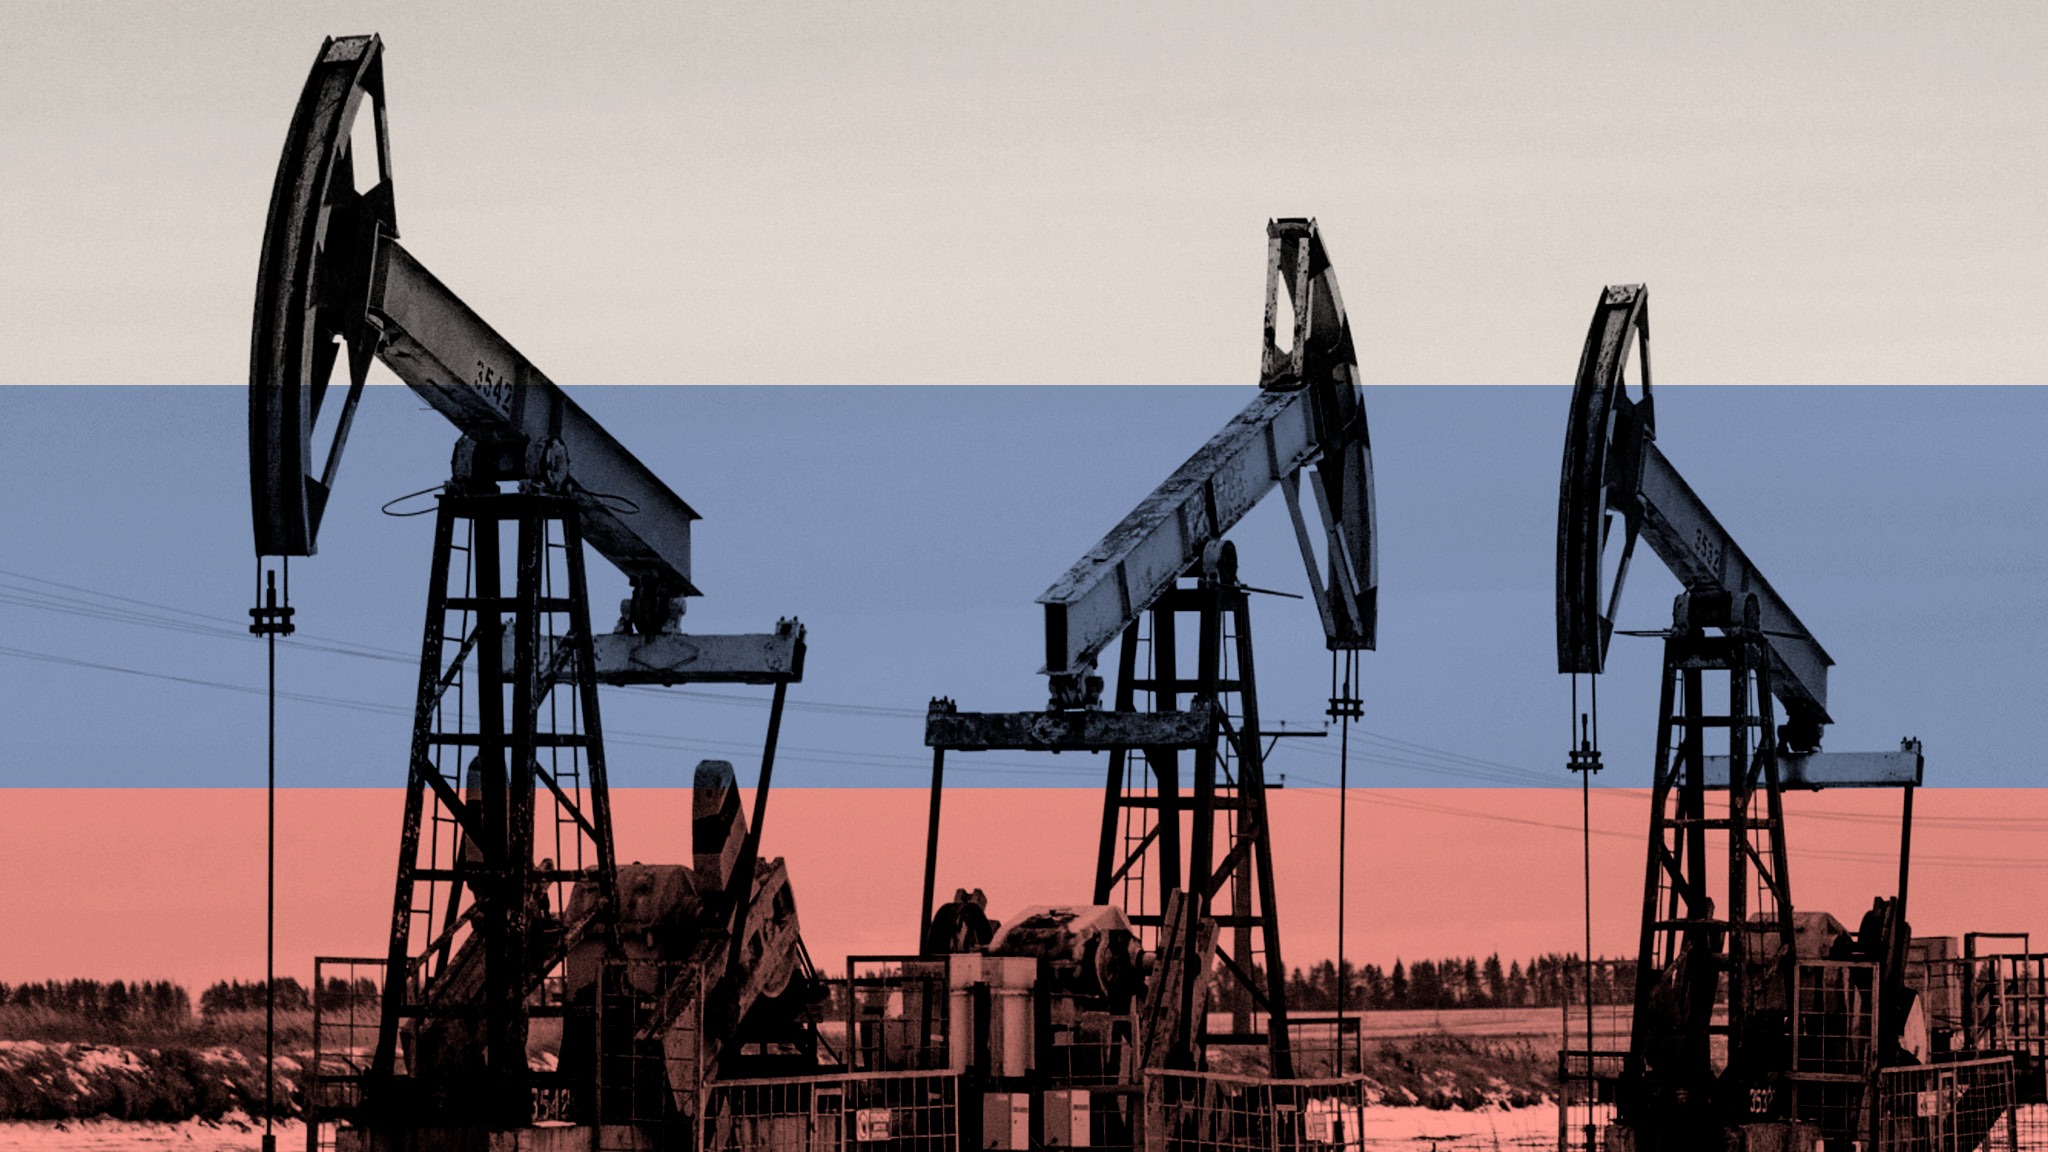 ԵՄ երկրները համաձայնության են եկել ռուսական նավթի երկու երրորդի ներկրման էմբարգոյի վերաբերյալ